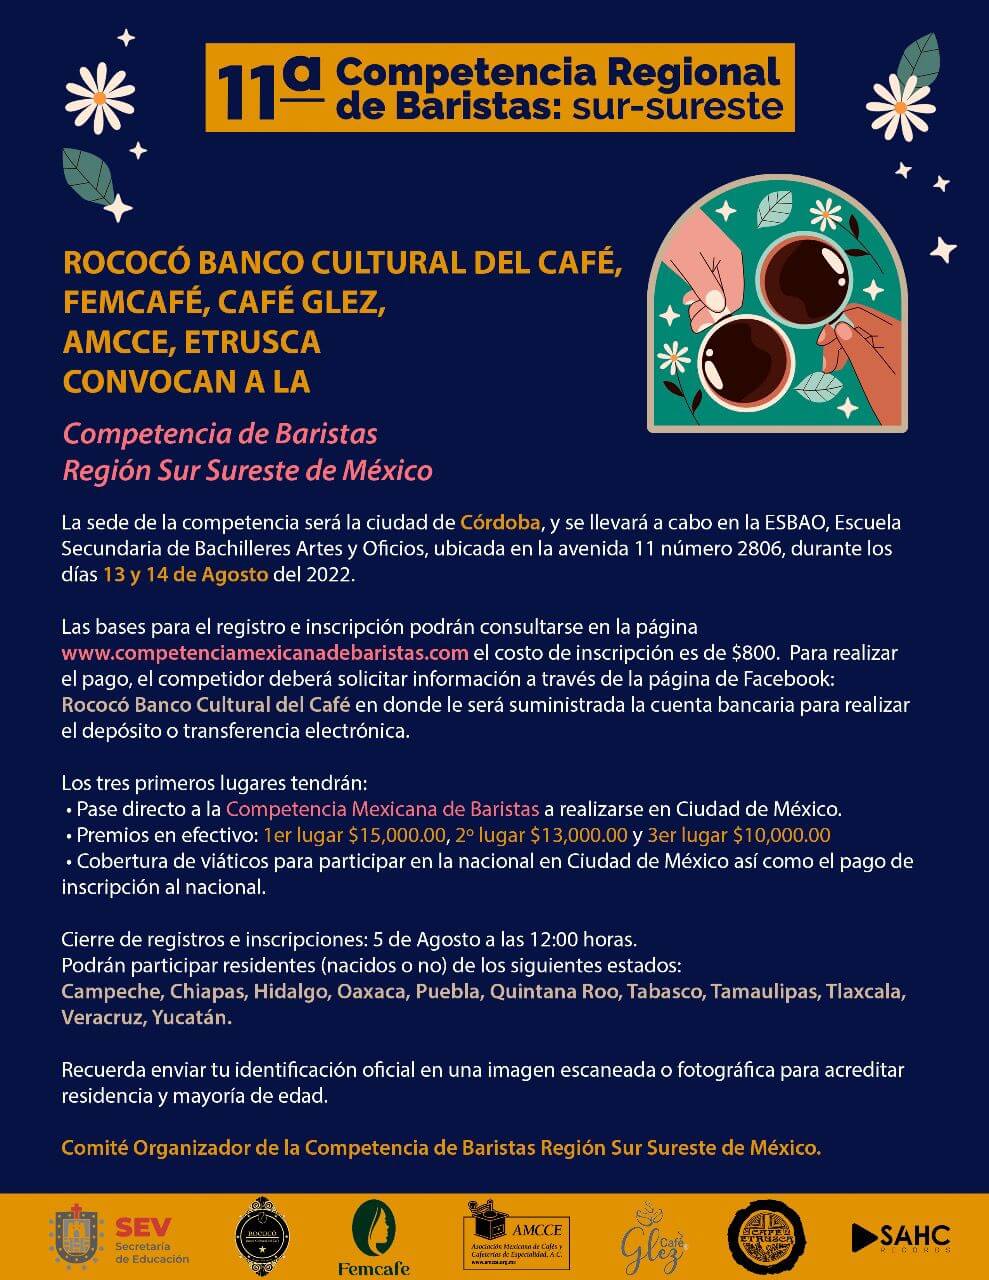 Asociación Mexicana de Cafés y Cafeterías de Especialidad